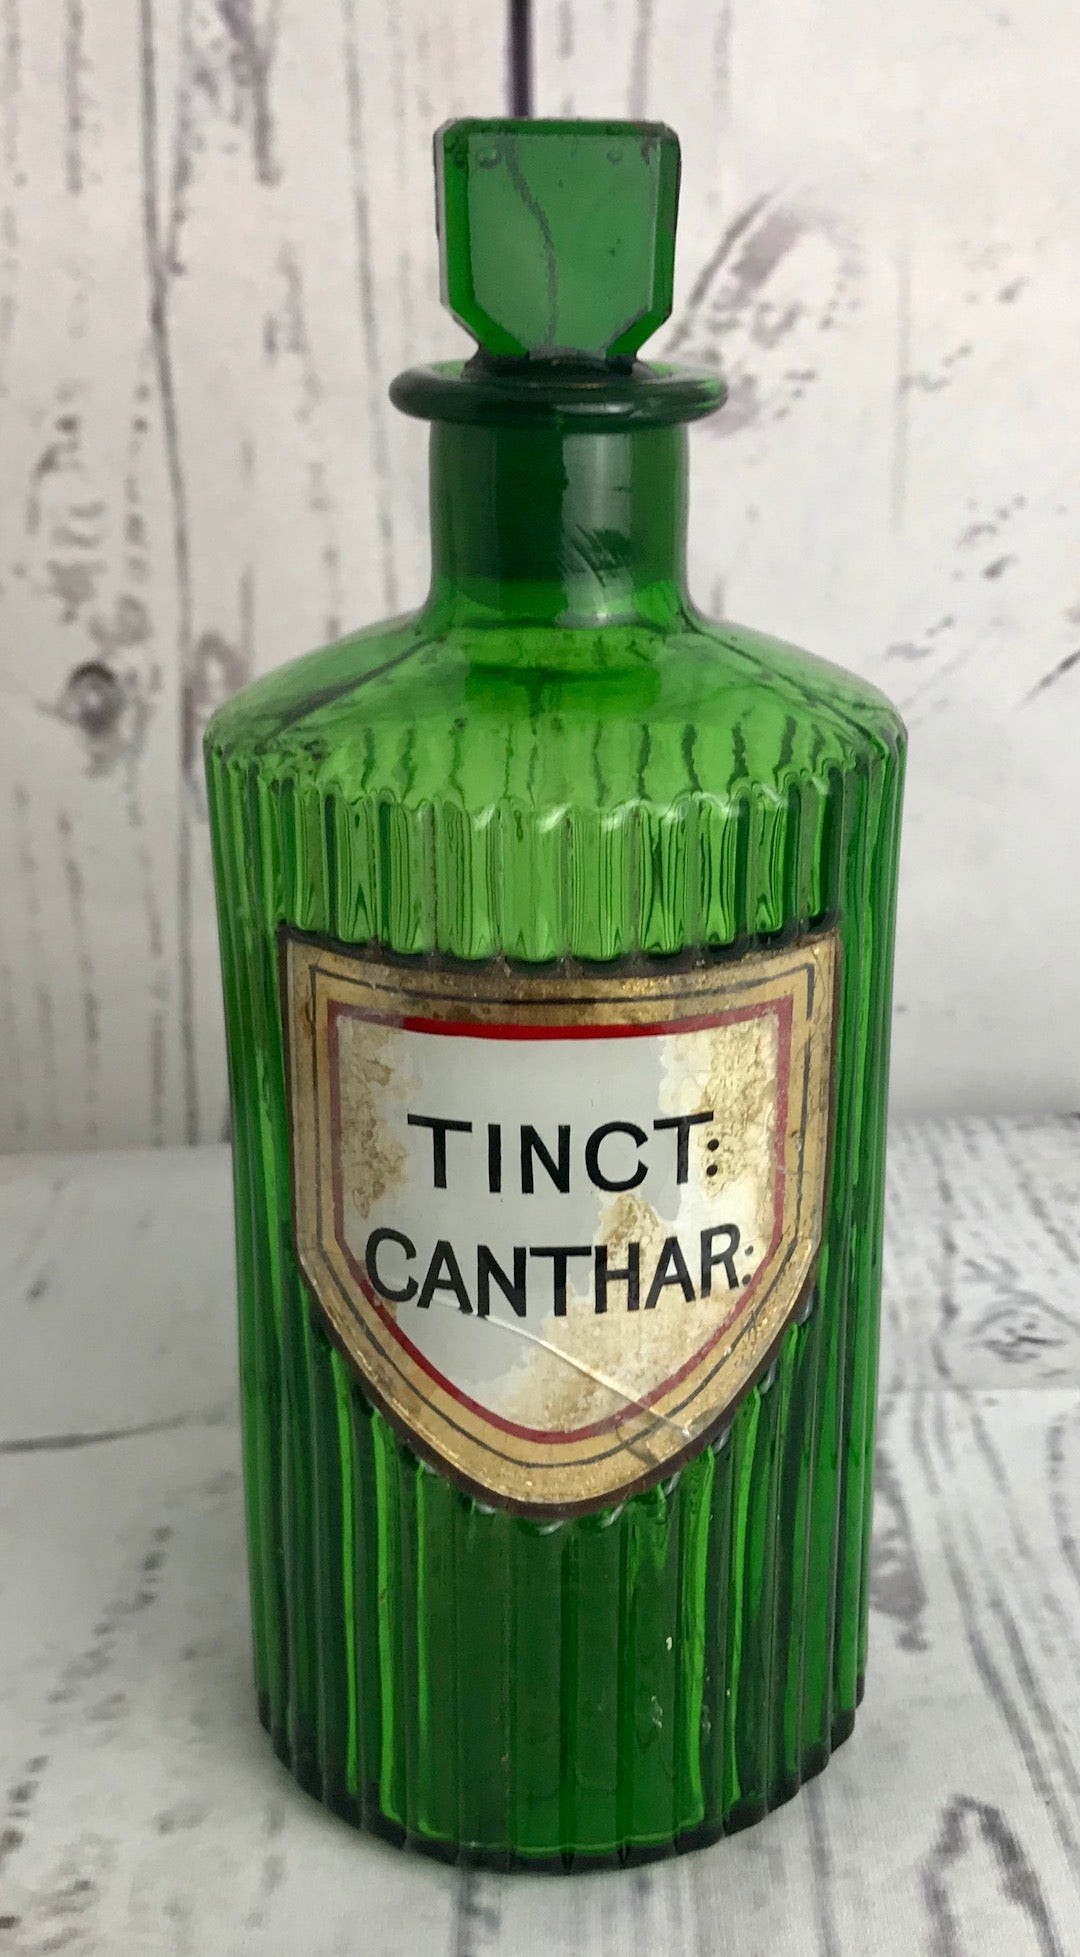 Tinct Canthar Bottle